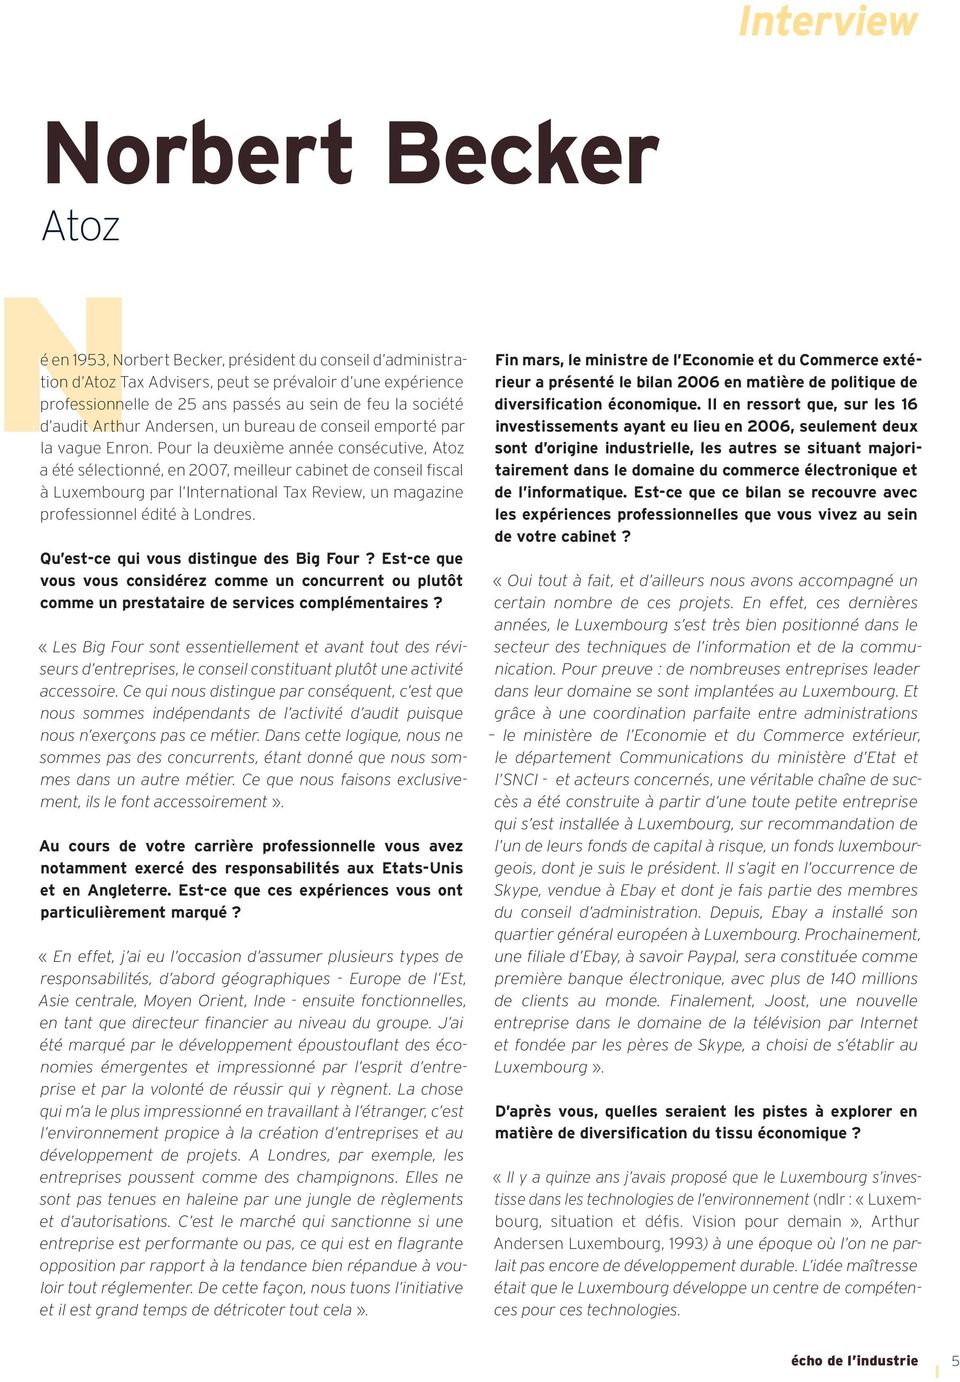 Pour la deuxième année consécutive, Atoz a été sélectionné, en 2007, meilleur cabinet de conseil fi scal à Luxembourg par l International Tax Review, un magazine professionnel édité à Londres.